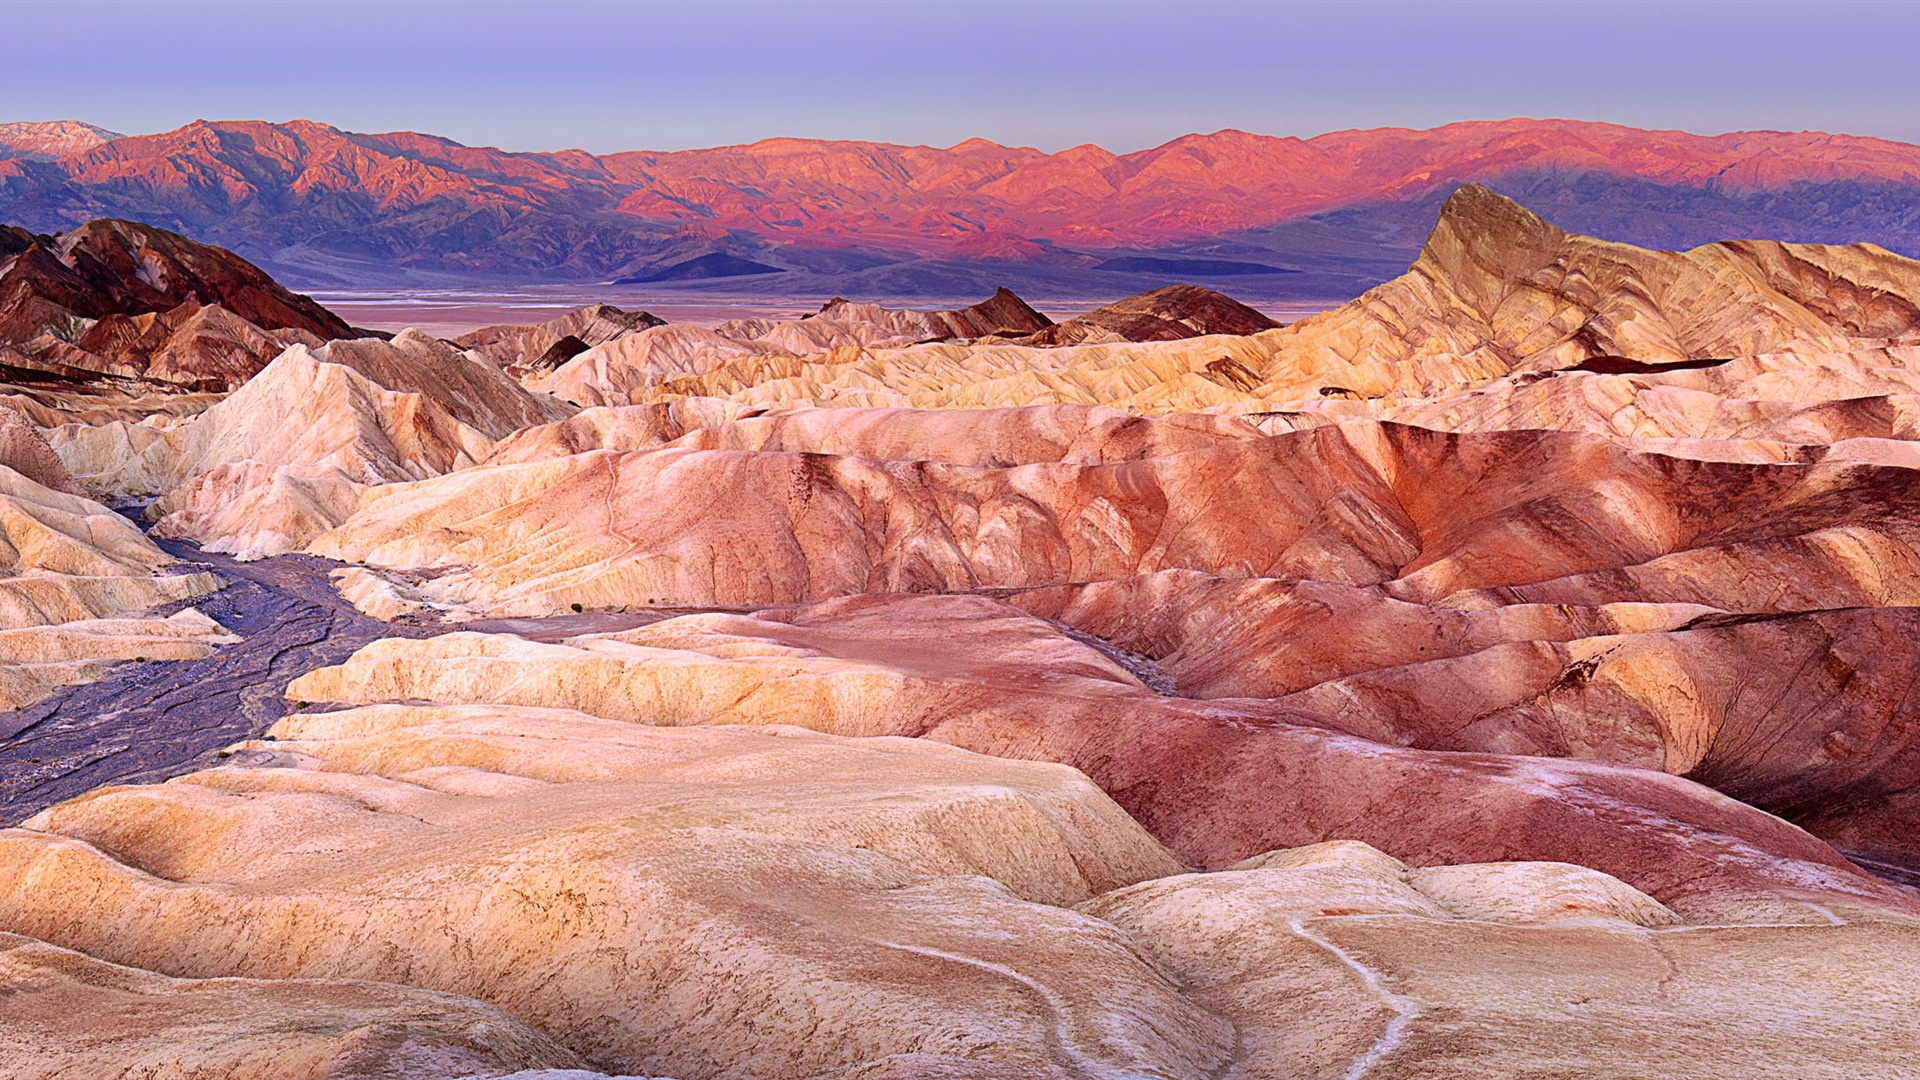 Les déserts chauds et arides, de Windows 8 fonds d'écran widescreen panoramique #10 - 1920x1080